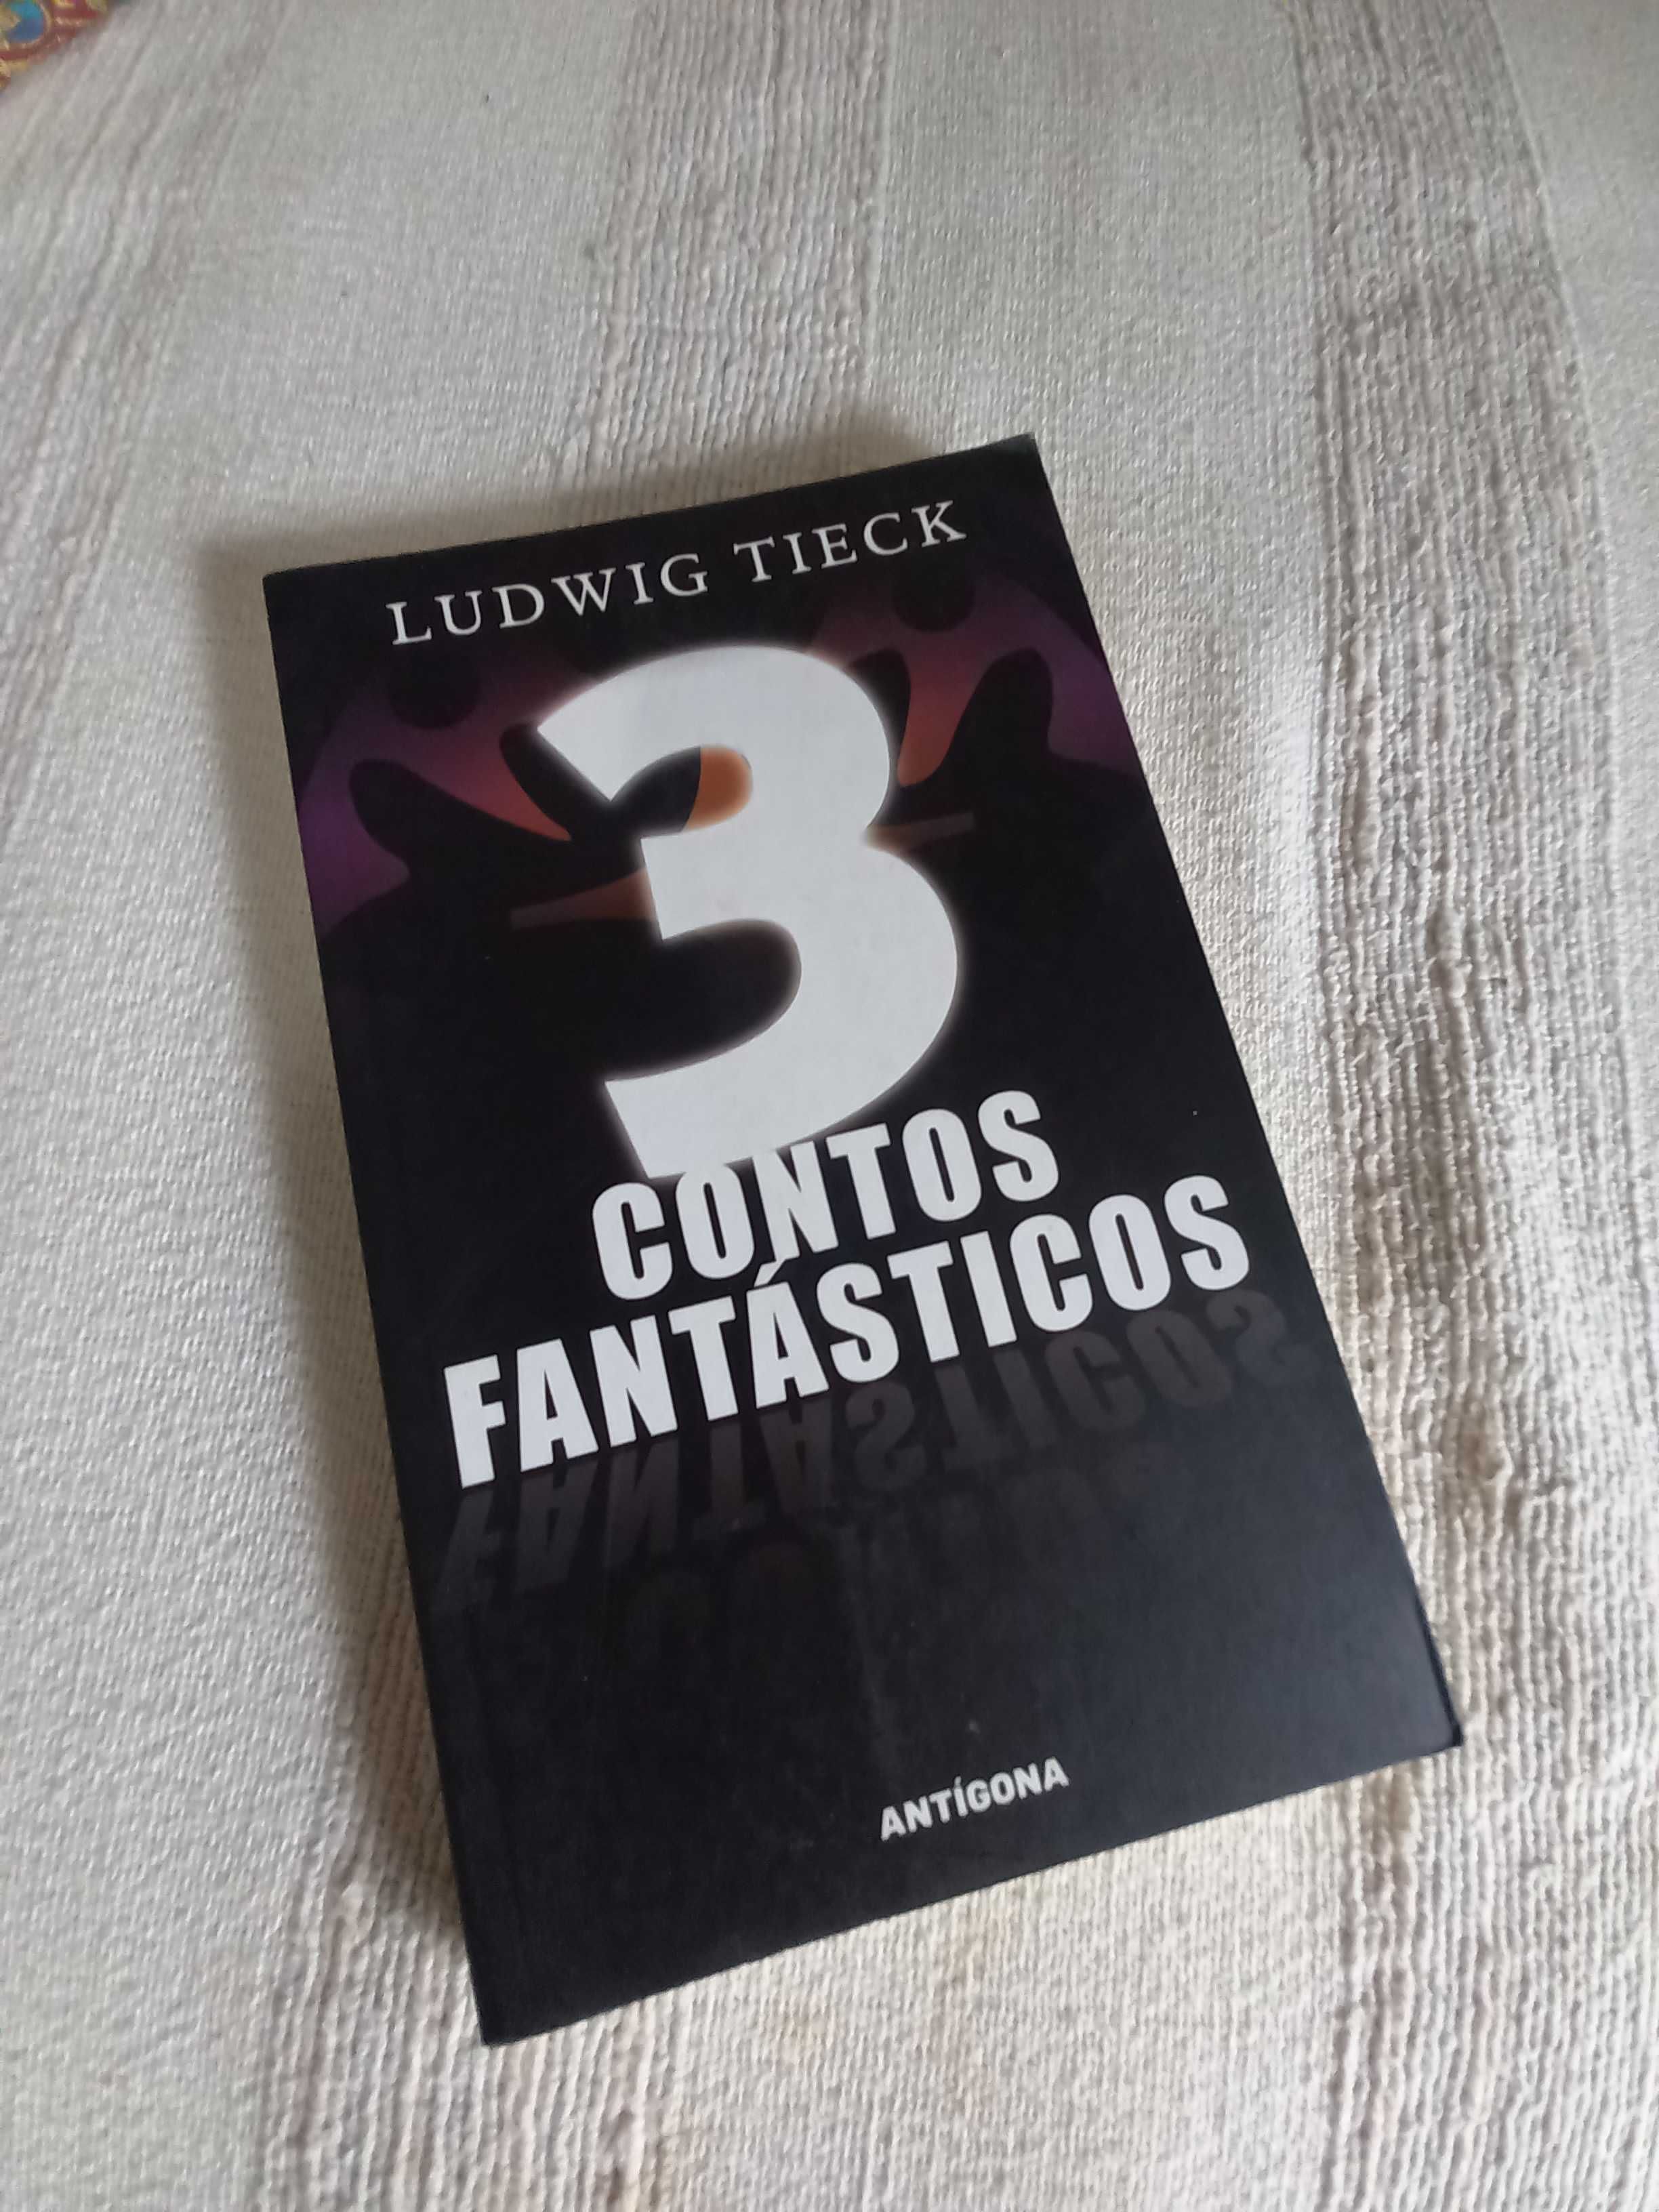 Ludwig Tieck 3 Contos Fantásticos edição Antigona